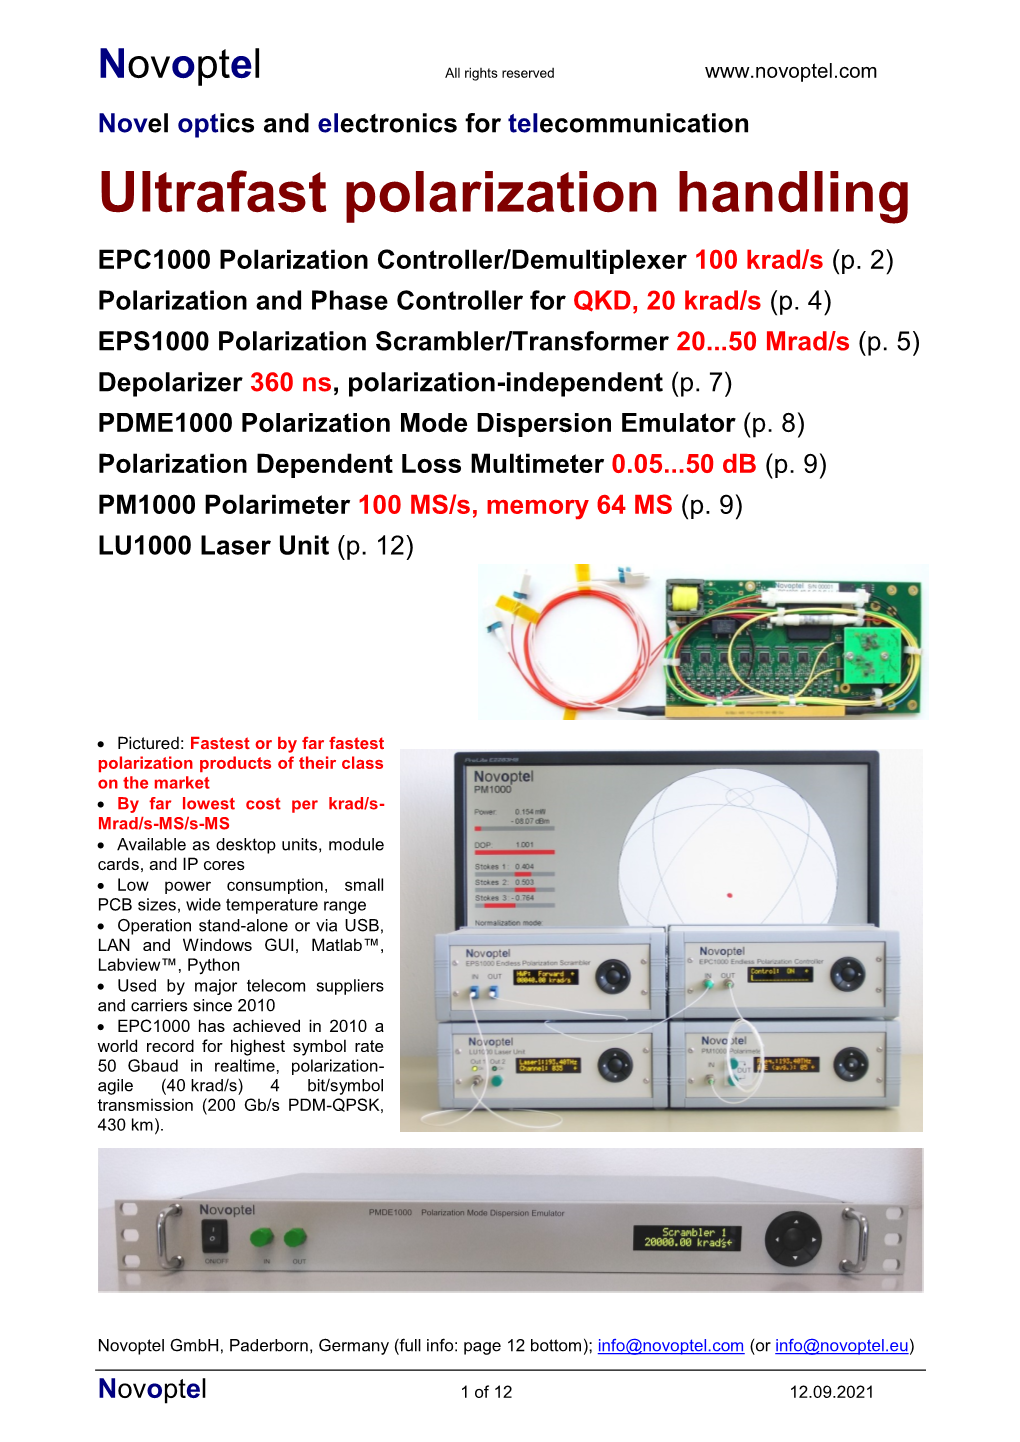 EPC1000 Polarization Controller/Demultiplexer 100 Krad/S (P